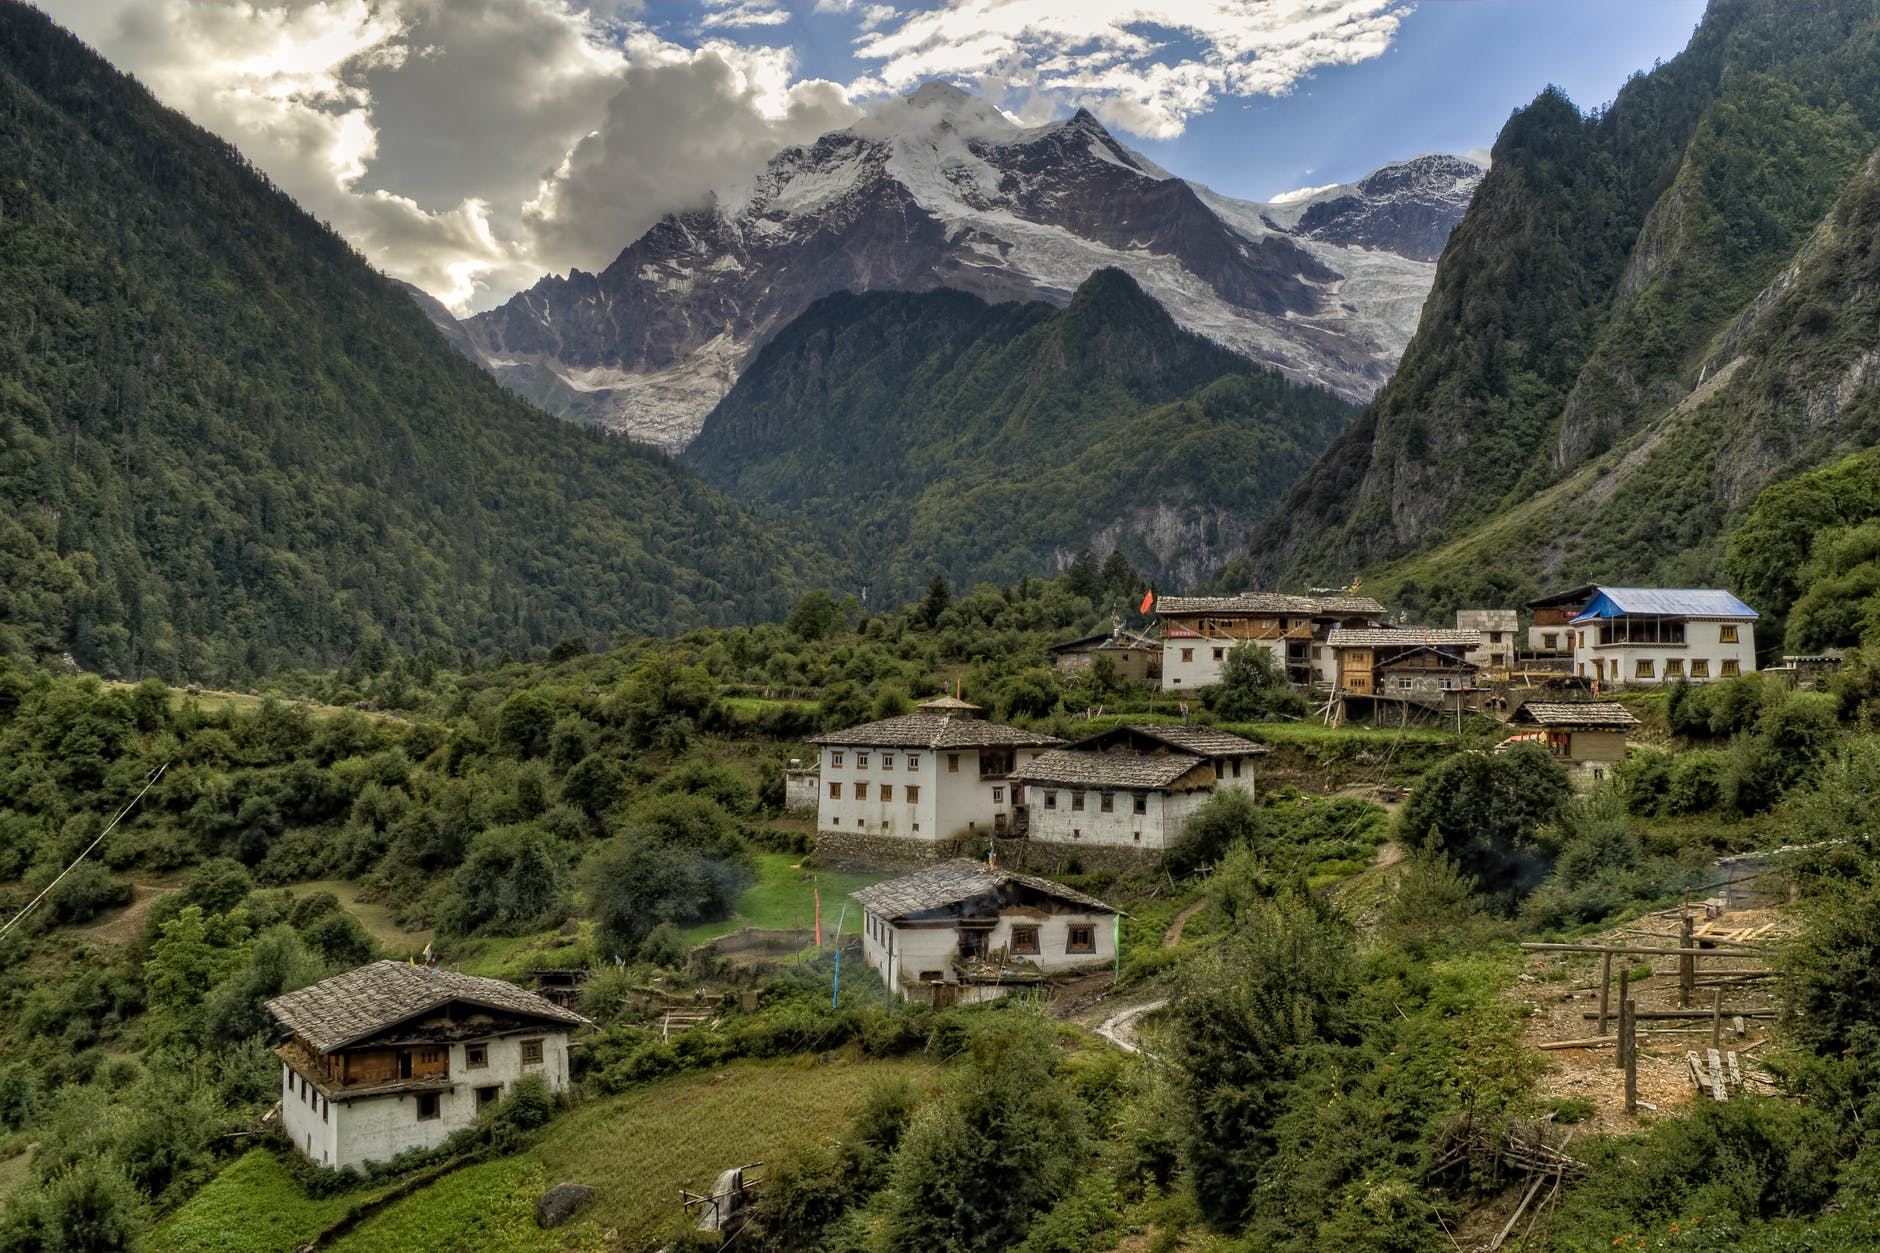 Günstiger Urlaub auf dem Dach der Welt: Nepal. Nepal ist ein wunderschönes Ziel für Abenteurer und Entdecker, die ein unvergessliches Erlebnis suchen und das Dach der Welt erklimmen wollen. Das Land ist ein wahres Paradies für Bergsteiger, denn Nepal ist die Heimat des Himalaya-Gebirges, in dem sich einige der höchsten Gipfel der Welt befinden. Der Mount Everest ist mit einer Höhe von 8.848 Metern das berühmteste Wahrzeichen Nepals und zieht Jahr für Jahr Abenteurer aus der ganzen Welt an, die sich der Herausforderung stellen wollen, den höchsten Berg der Erde zu besteigen.